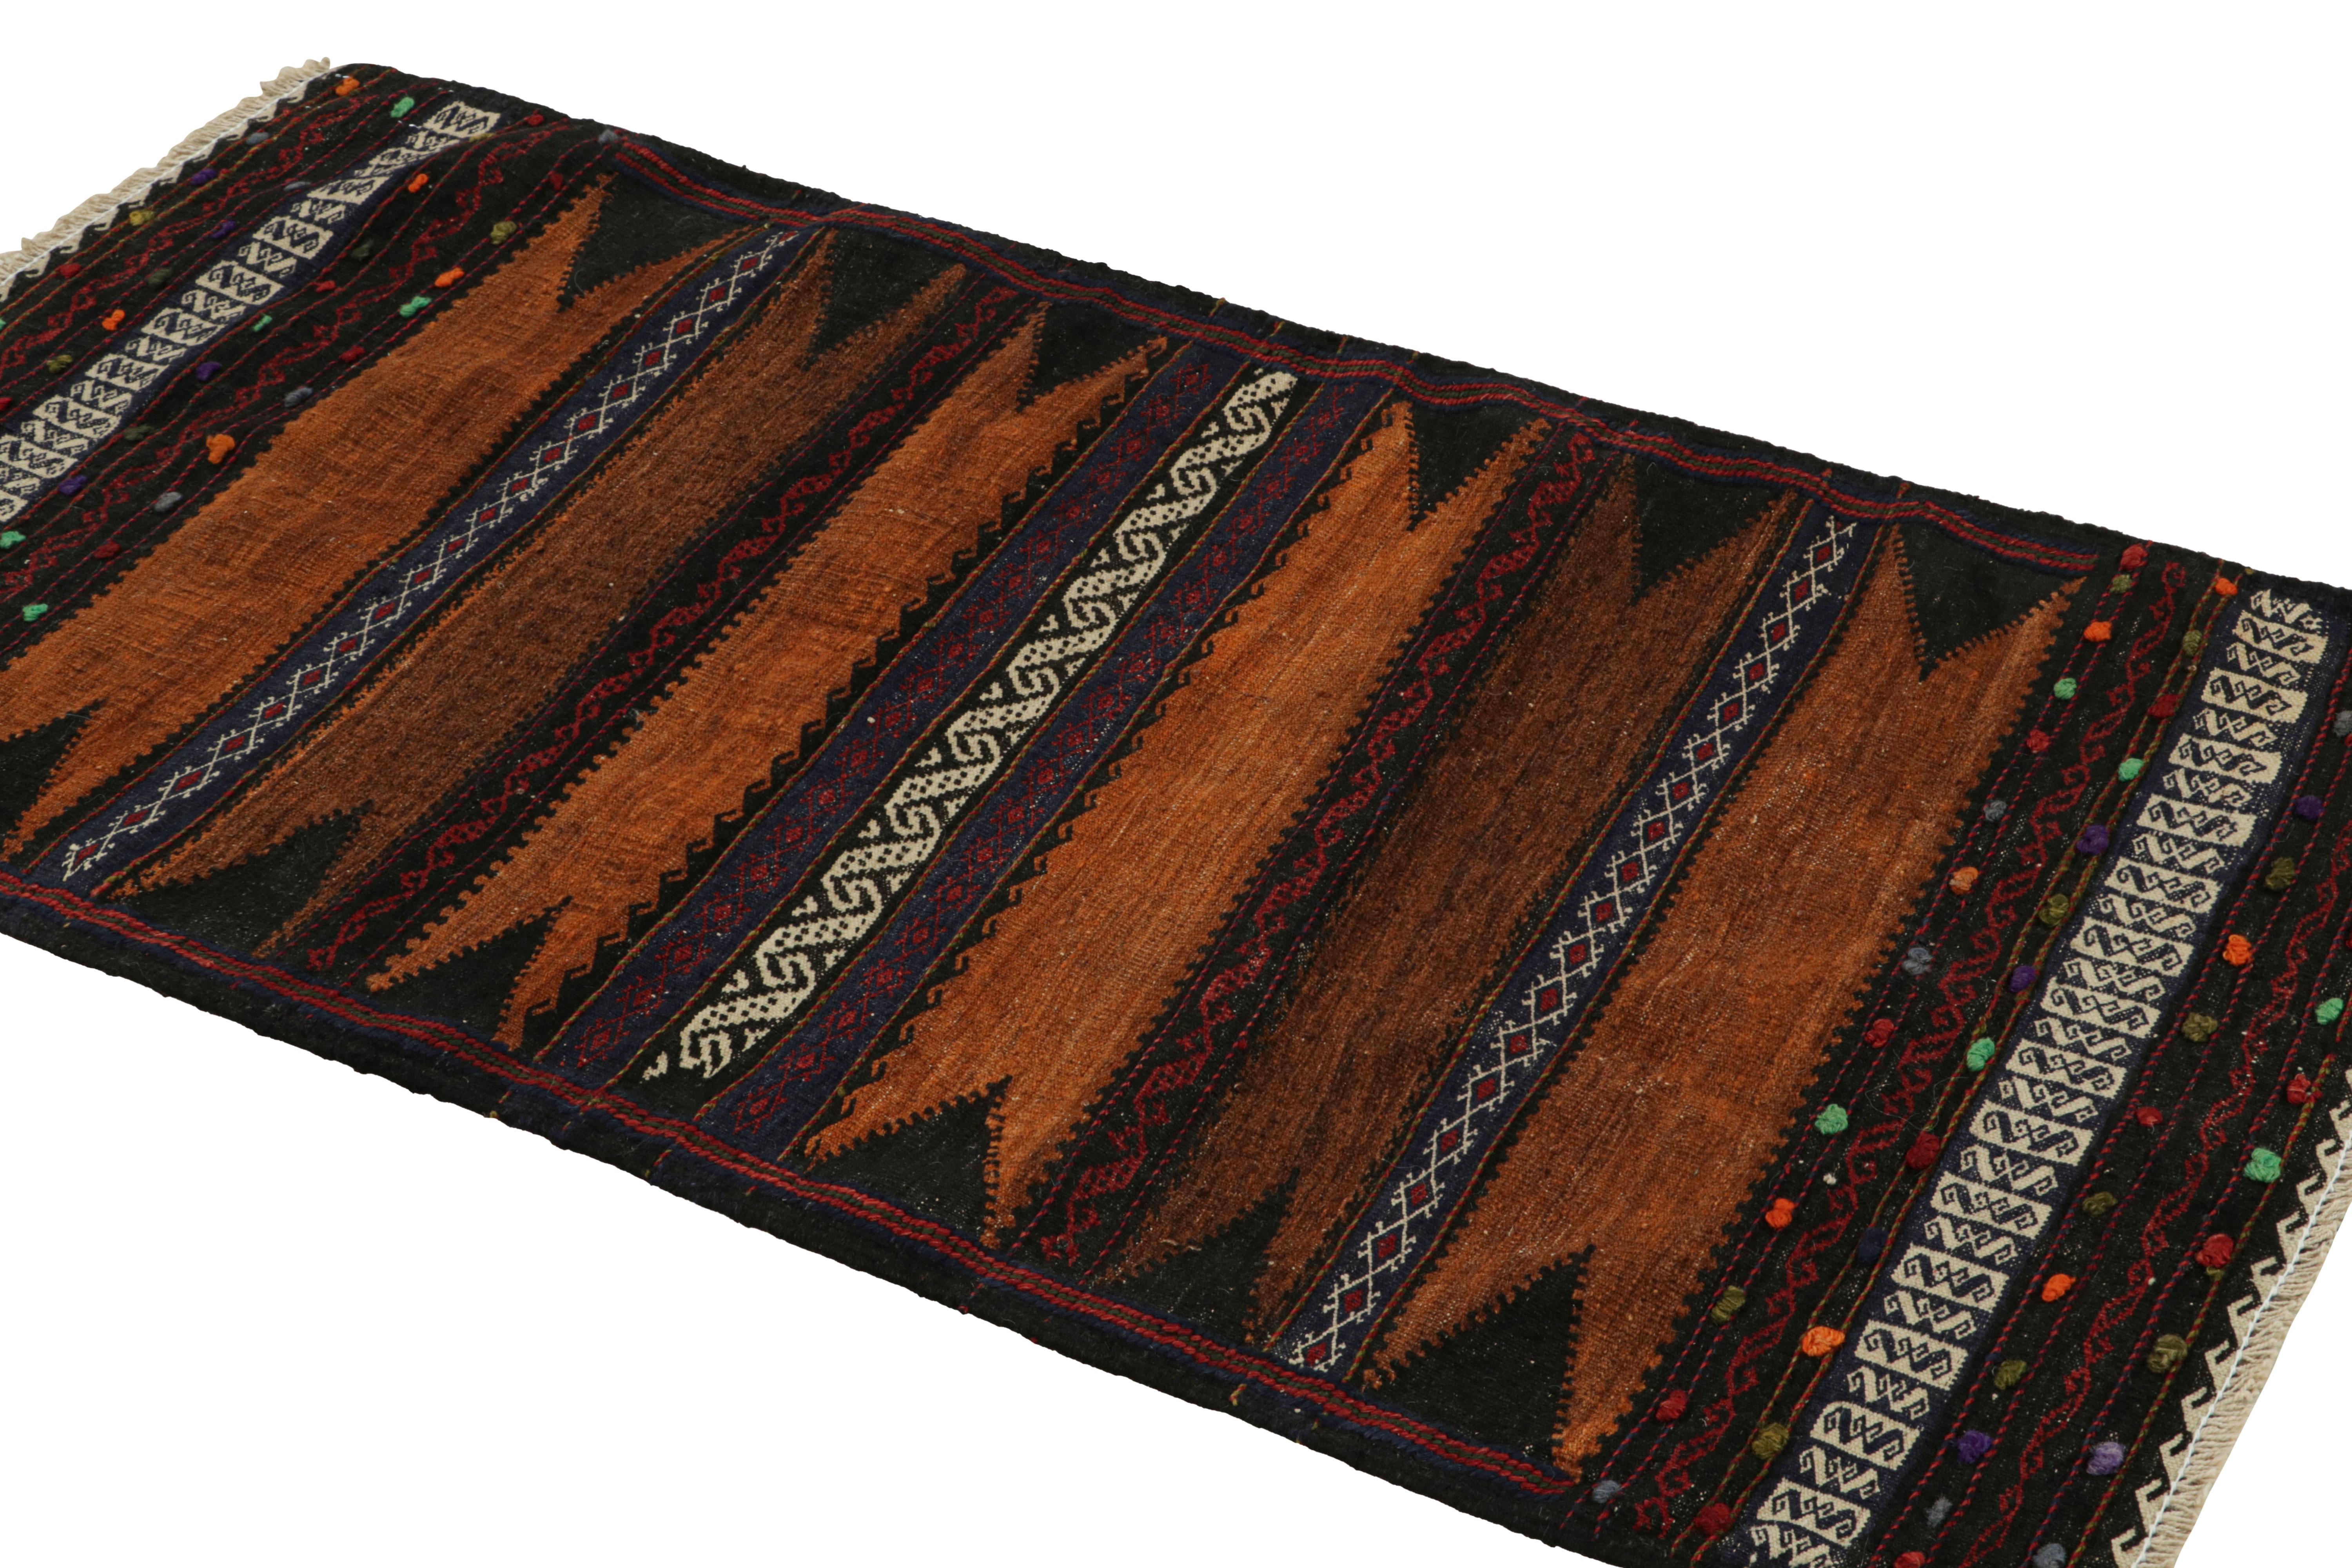 Dieser handgewebte afghanische 2x5-Kilim-Teppich im Vintage-Stil stammt aus der Zeit um 1950-1960 - eine Stammeszusammenstellung unter den Neuzugängen der Rug & Kilim Collection.

Über das Design:

Eine polychrome Farbgebung mit satten und